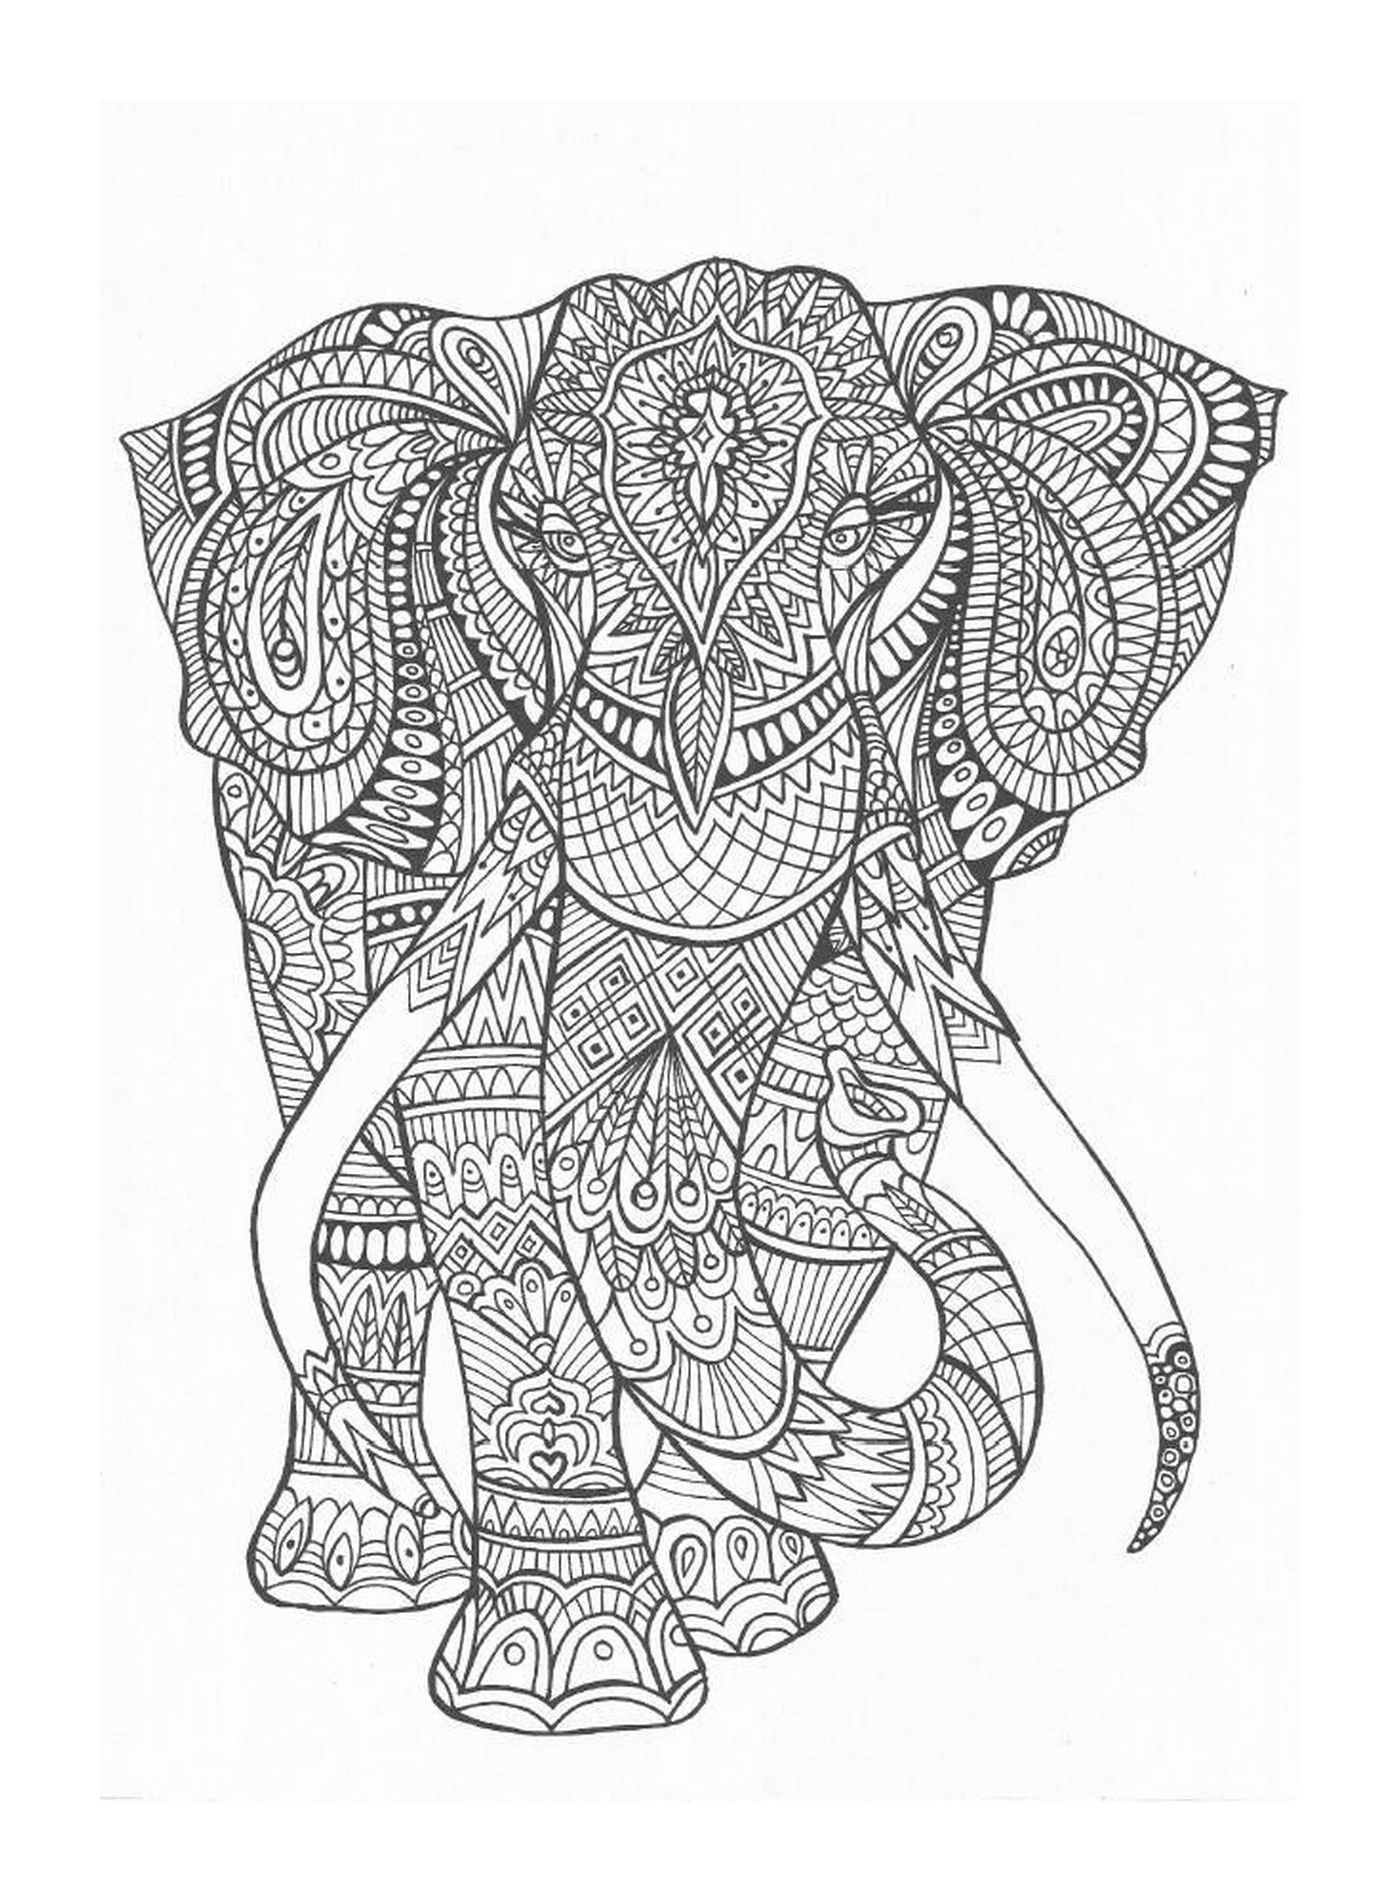  Um elefante decorado com mandalas 